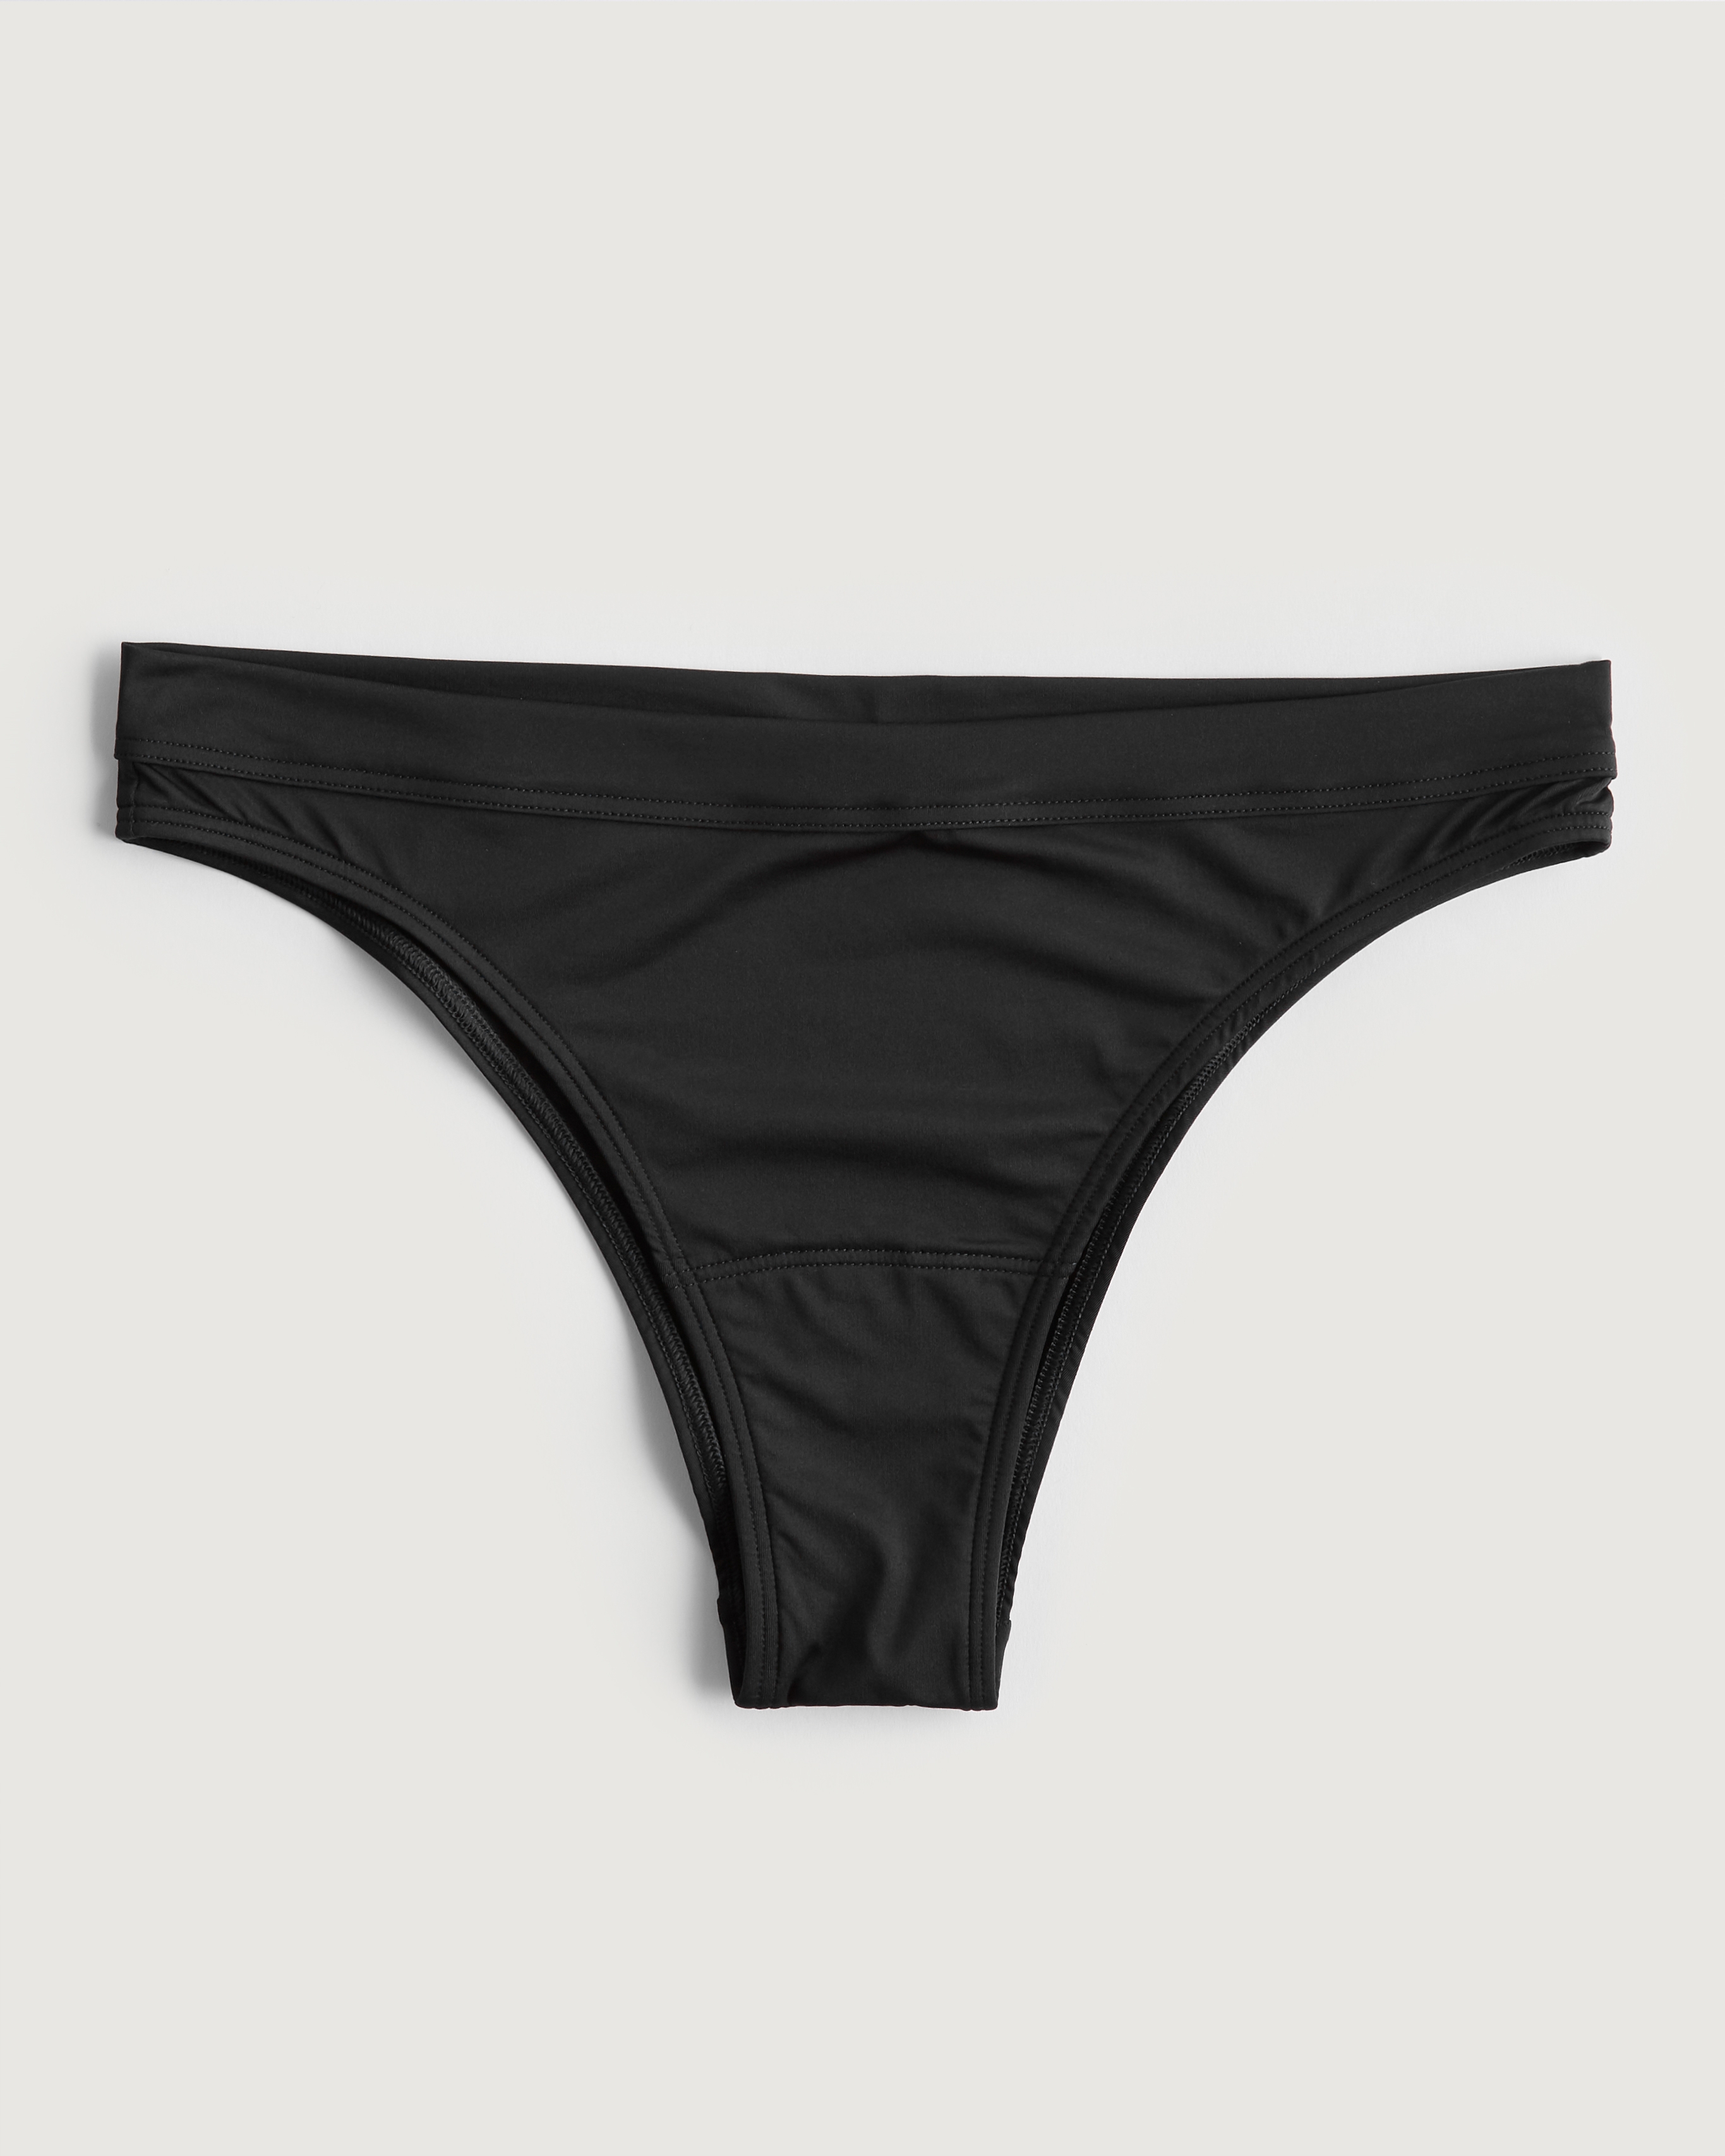 gilly hicks sydney underwear